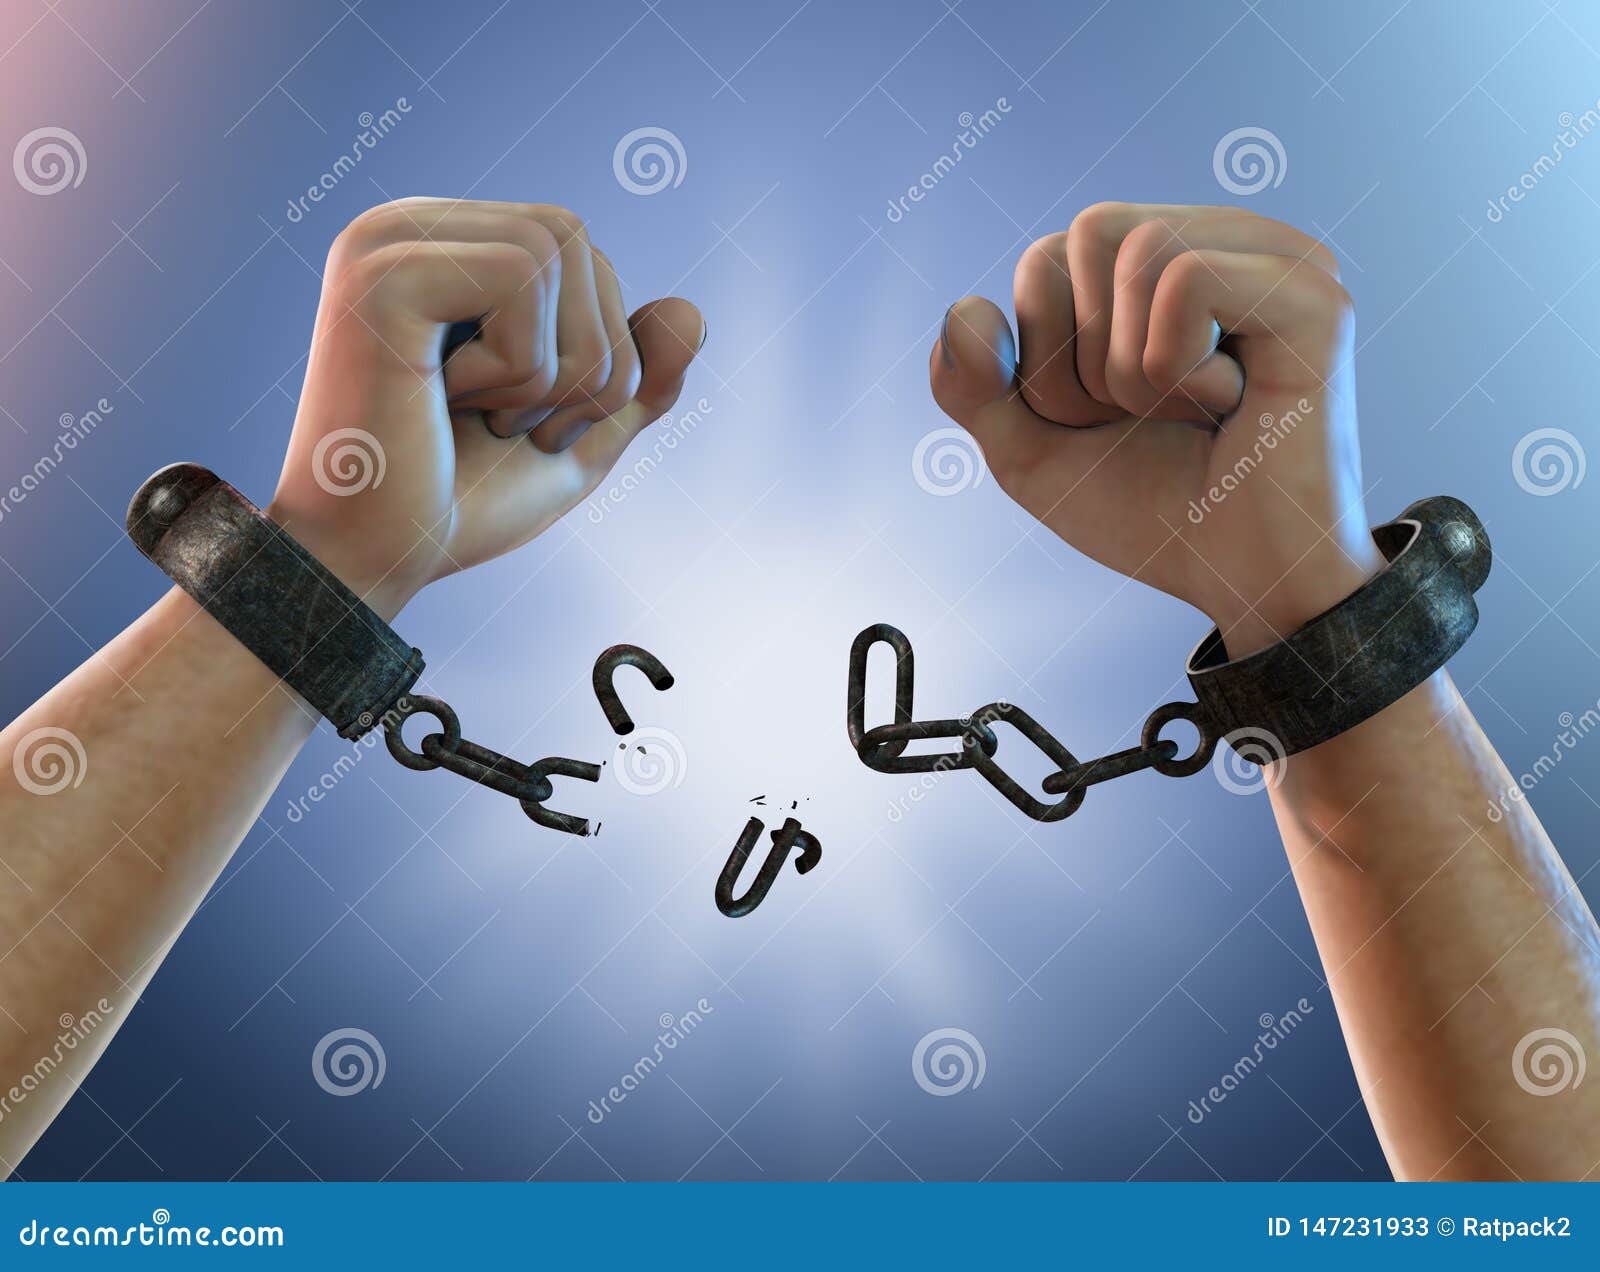 breaking free - breaking shackles